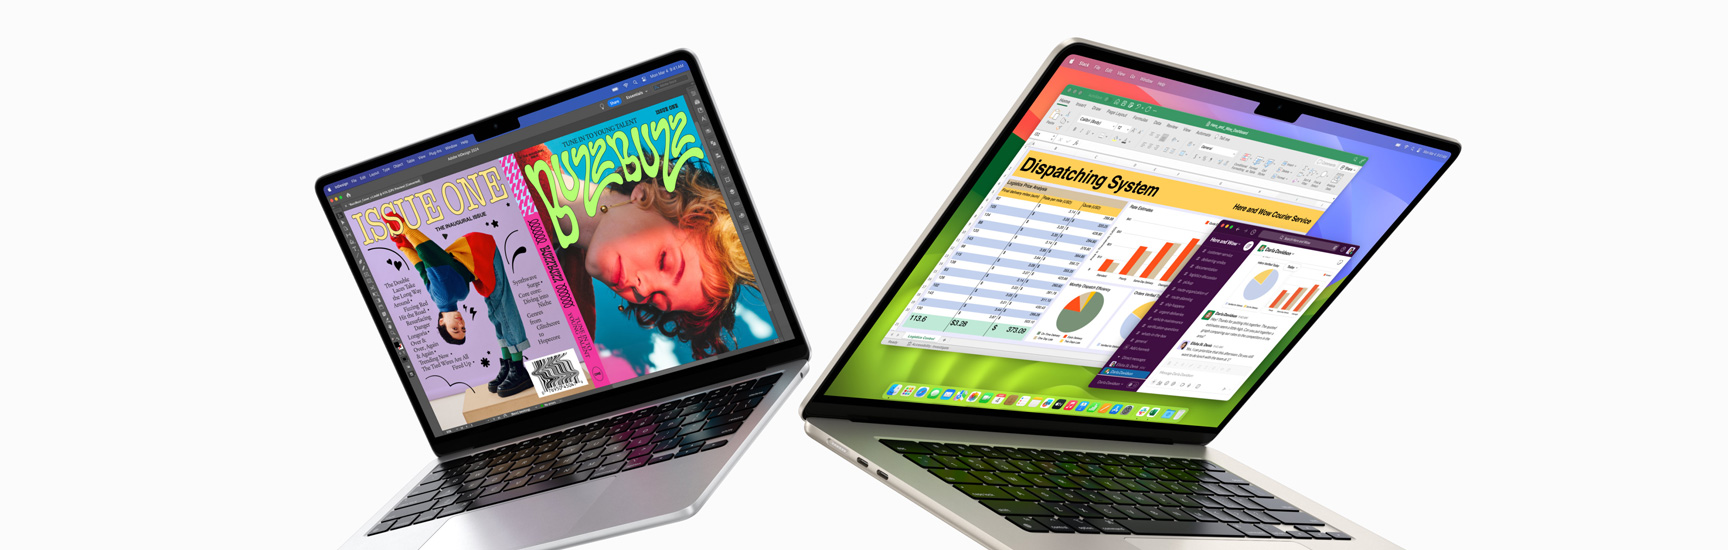 兩部 MacBook Air 微微打開，左側是 13 吋 MacBook Air，右側是 15 吋 MacBook Air。13 吋的螢幕展示用 In Design 製作色彩繽紛的雜誌封面。15 吋的螢幕展示 Microsoft Excel 和 Slack。